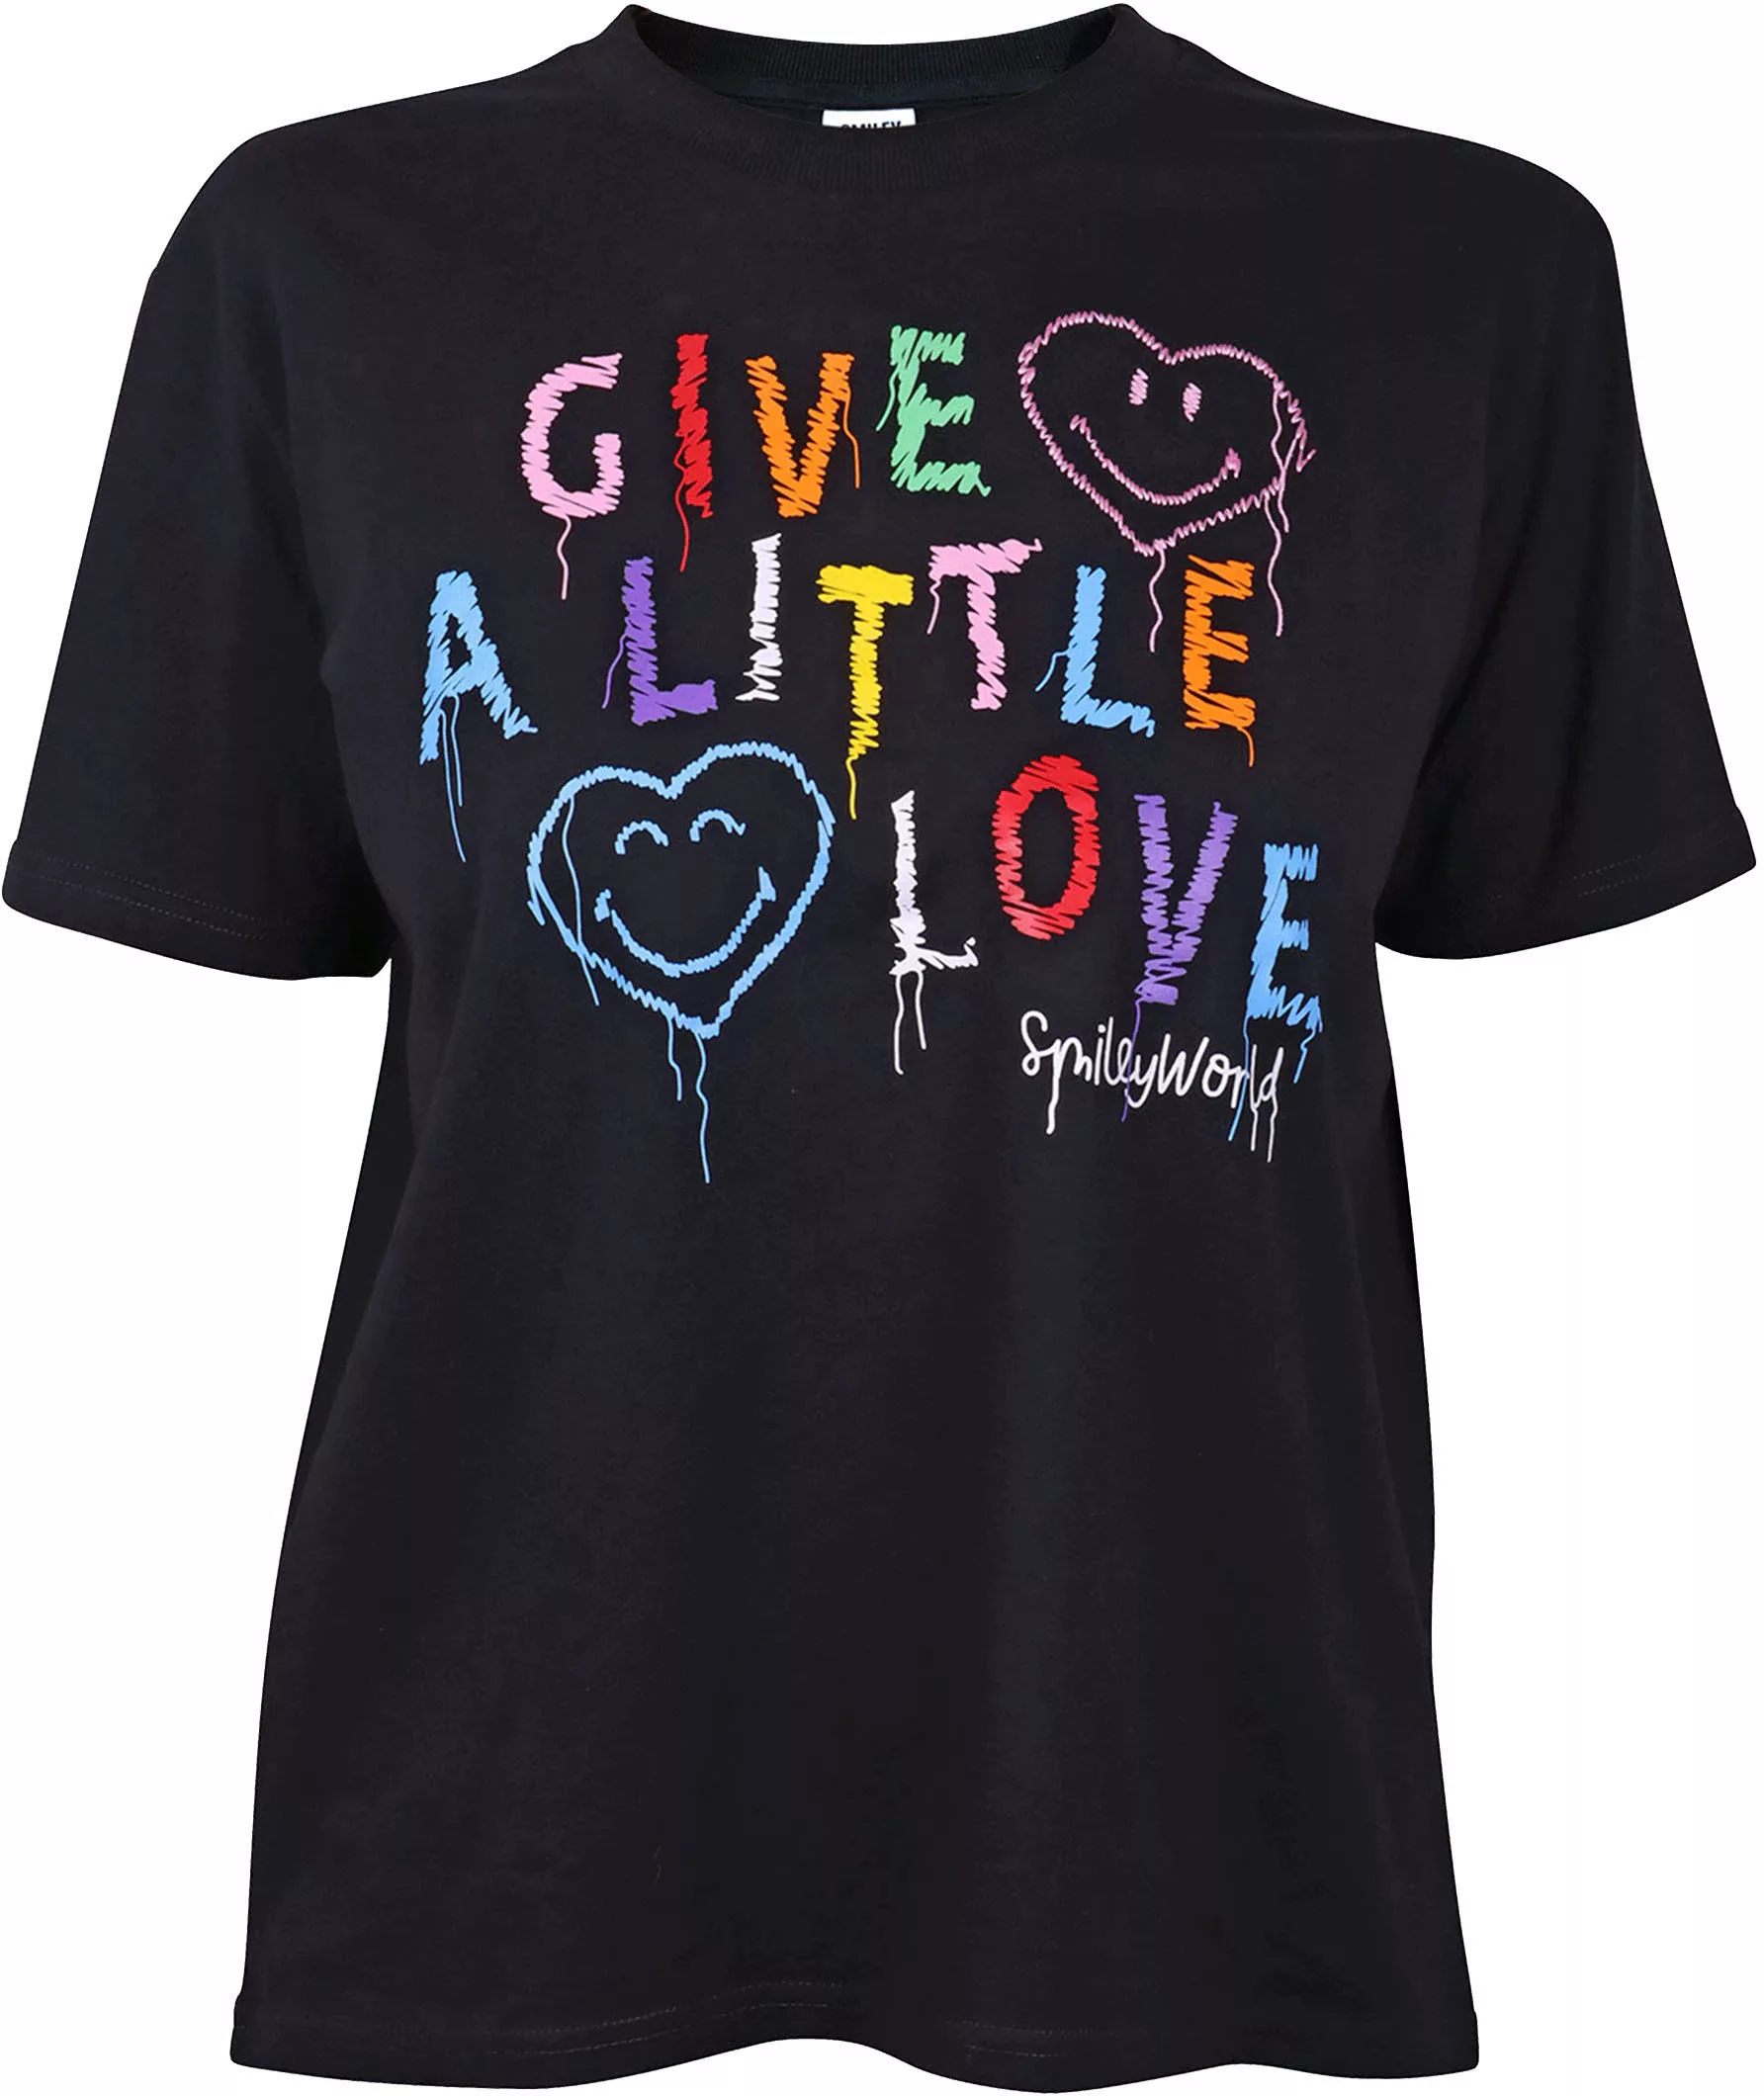 Capelli New York T-Shirt mit Herzen- Smiley World günstig online kaufen